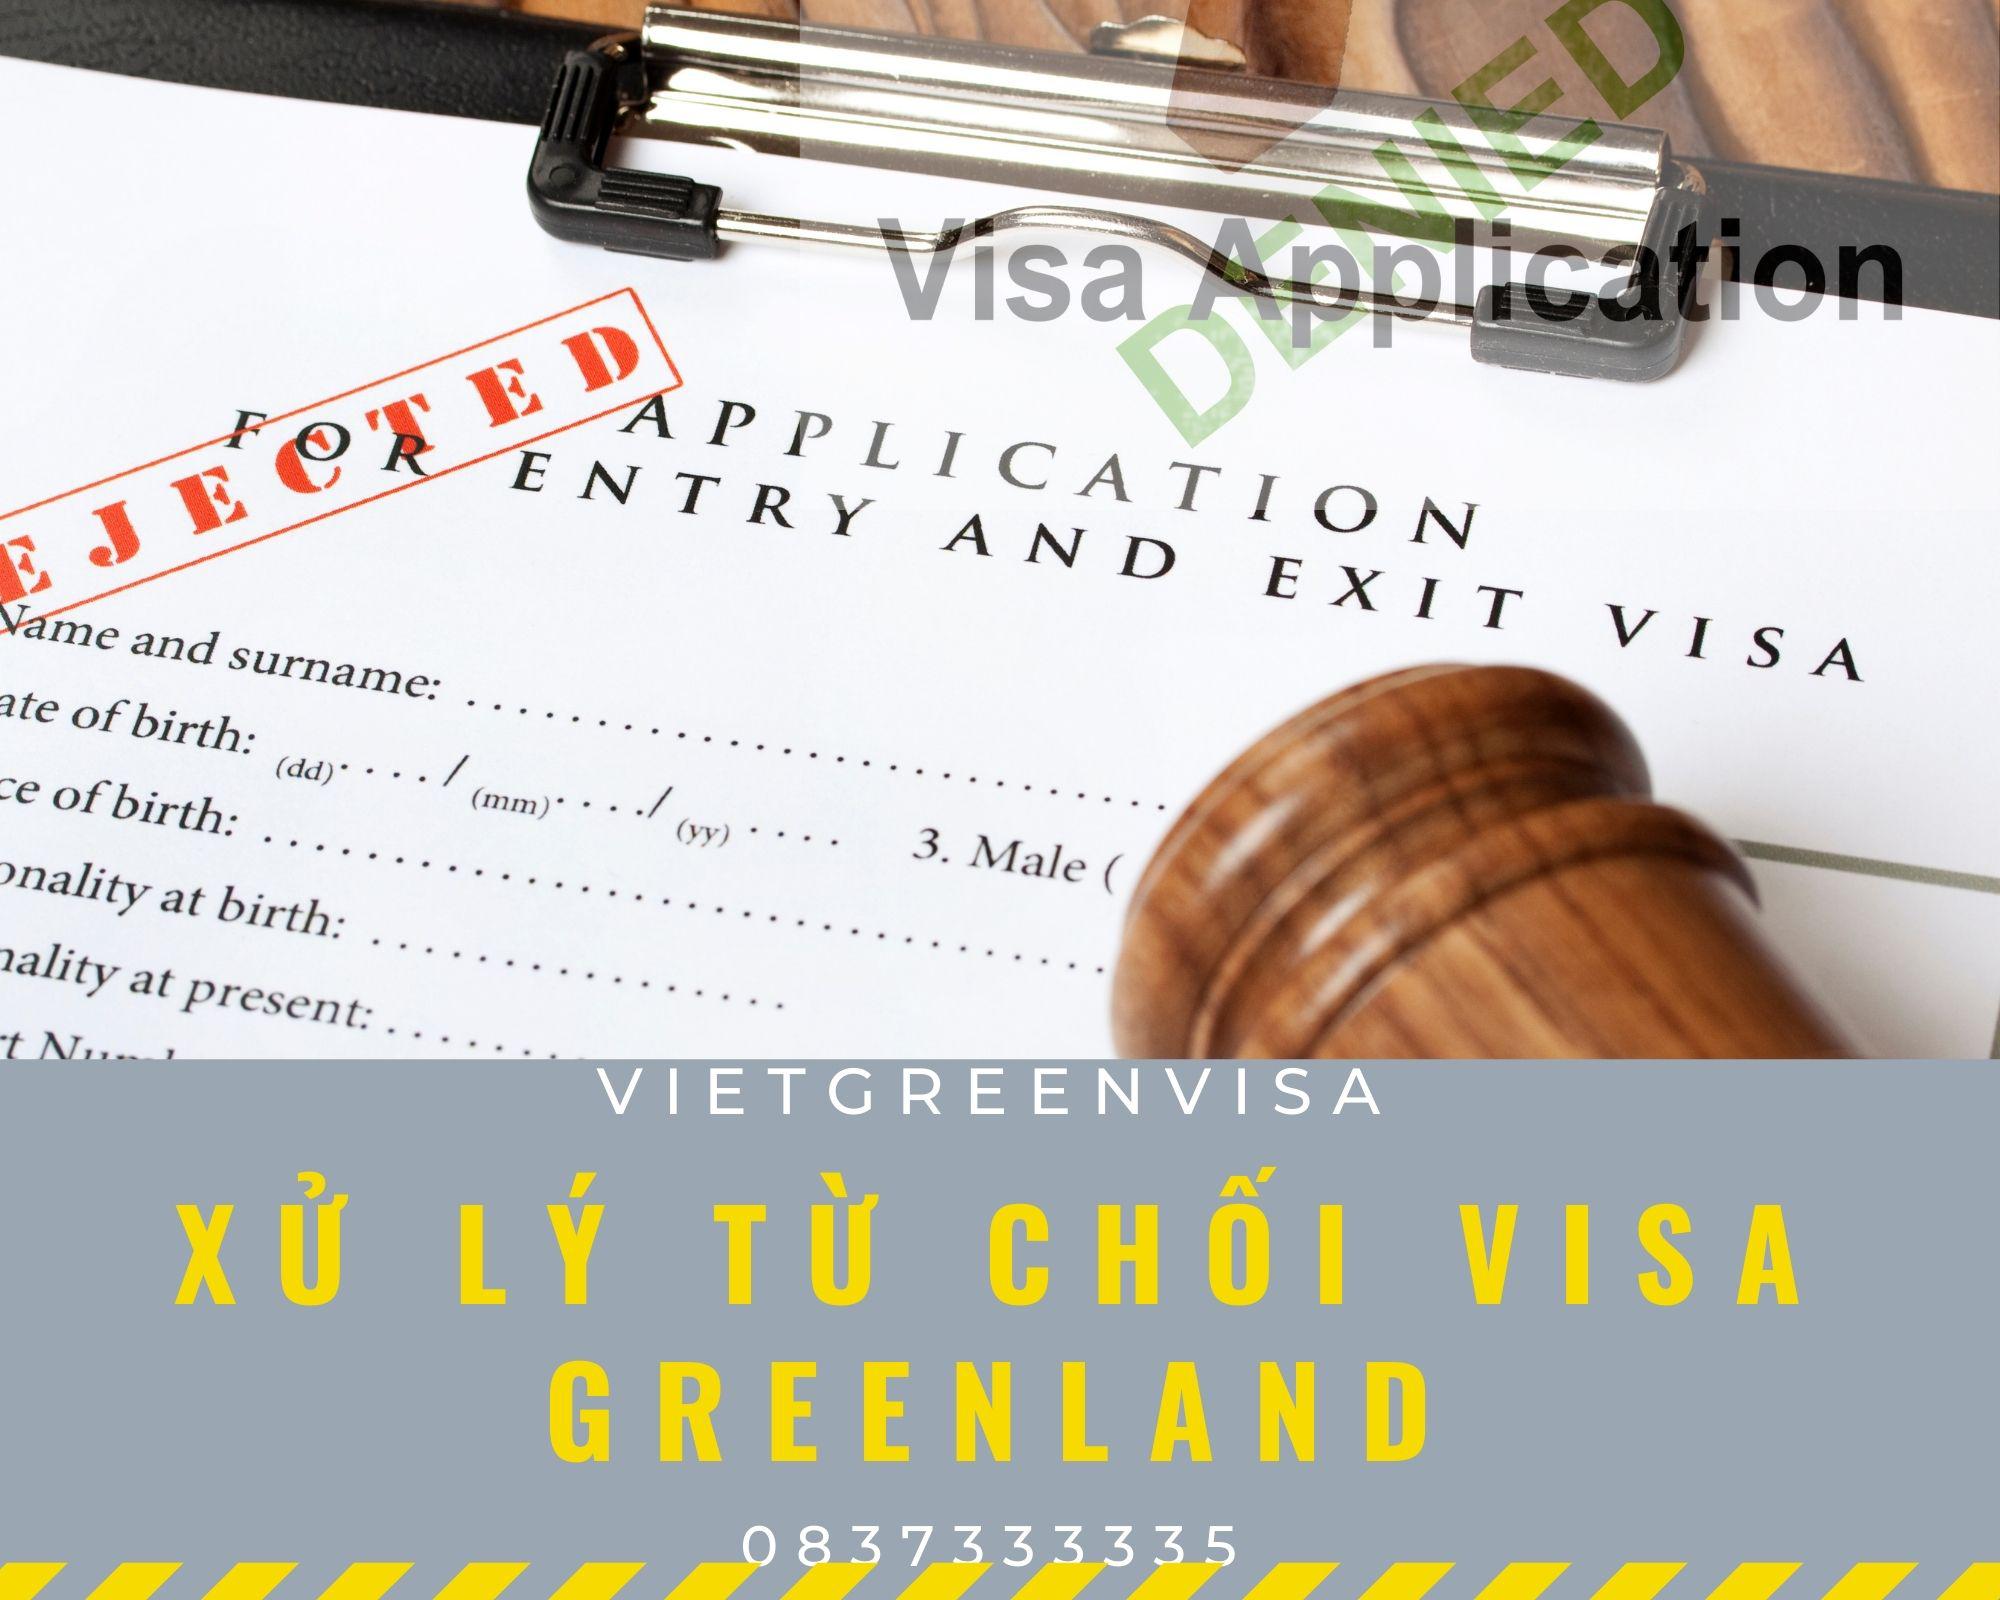 Hỗ trợ xử lý visa Greenland bị từ chối nhanh gọn